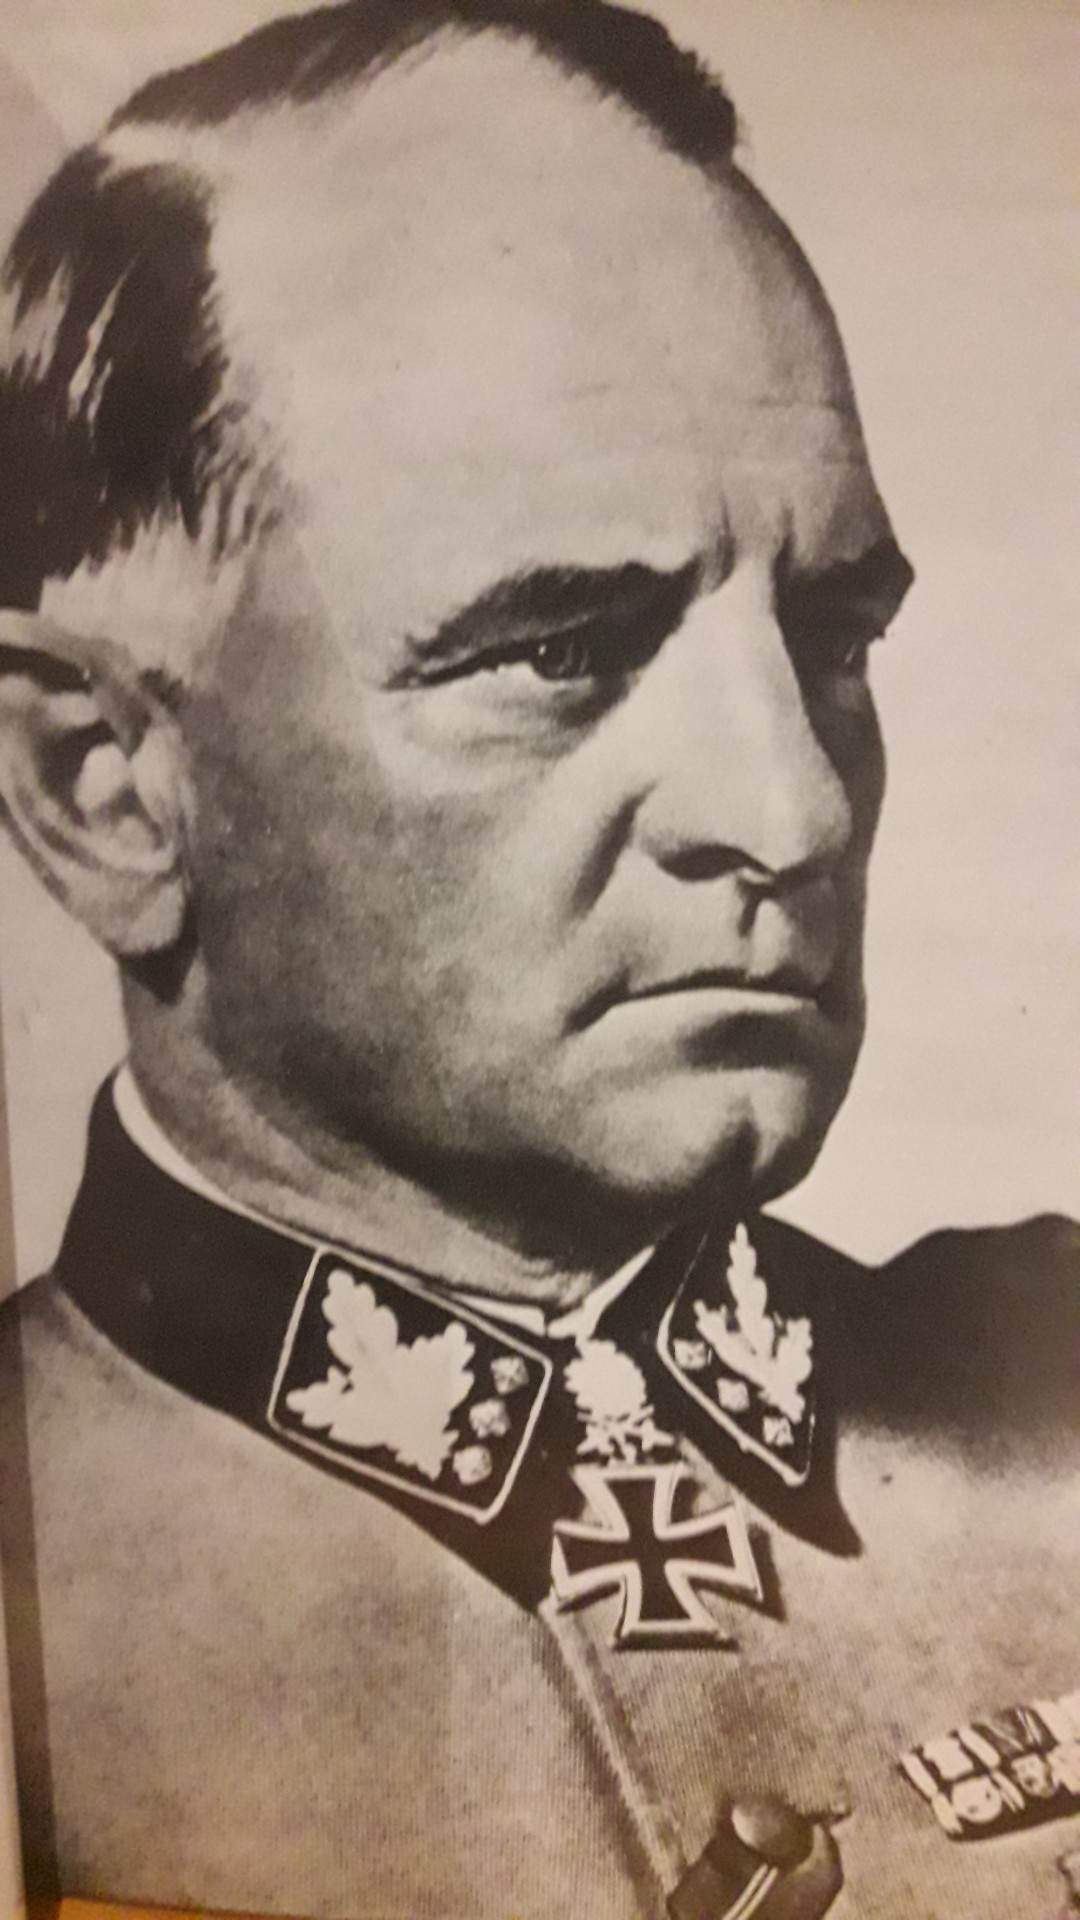 Sepp Dietrich kommandeur Leibstandarte SS Adolf Hitler und seine Manner / 245 blz